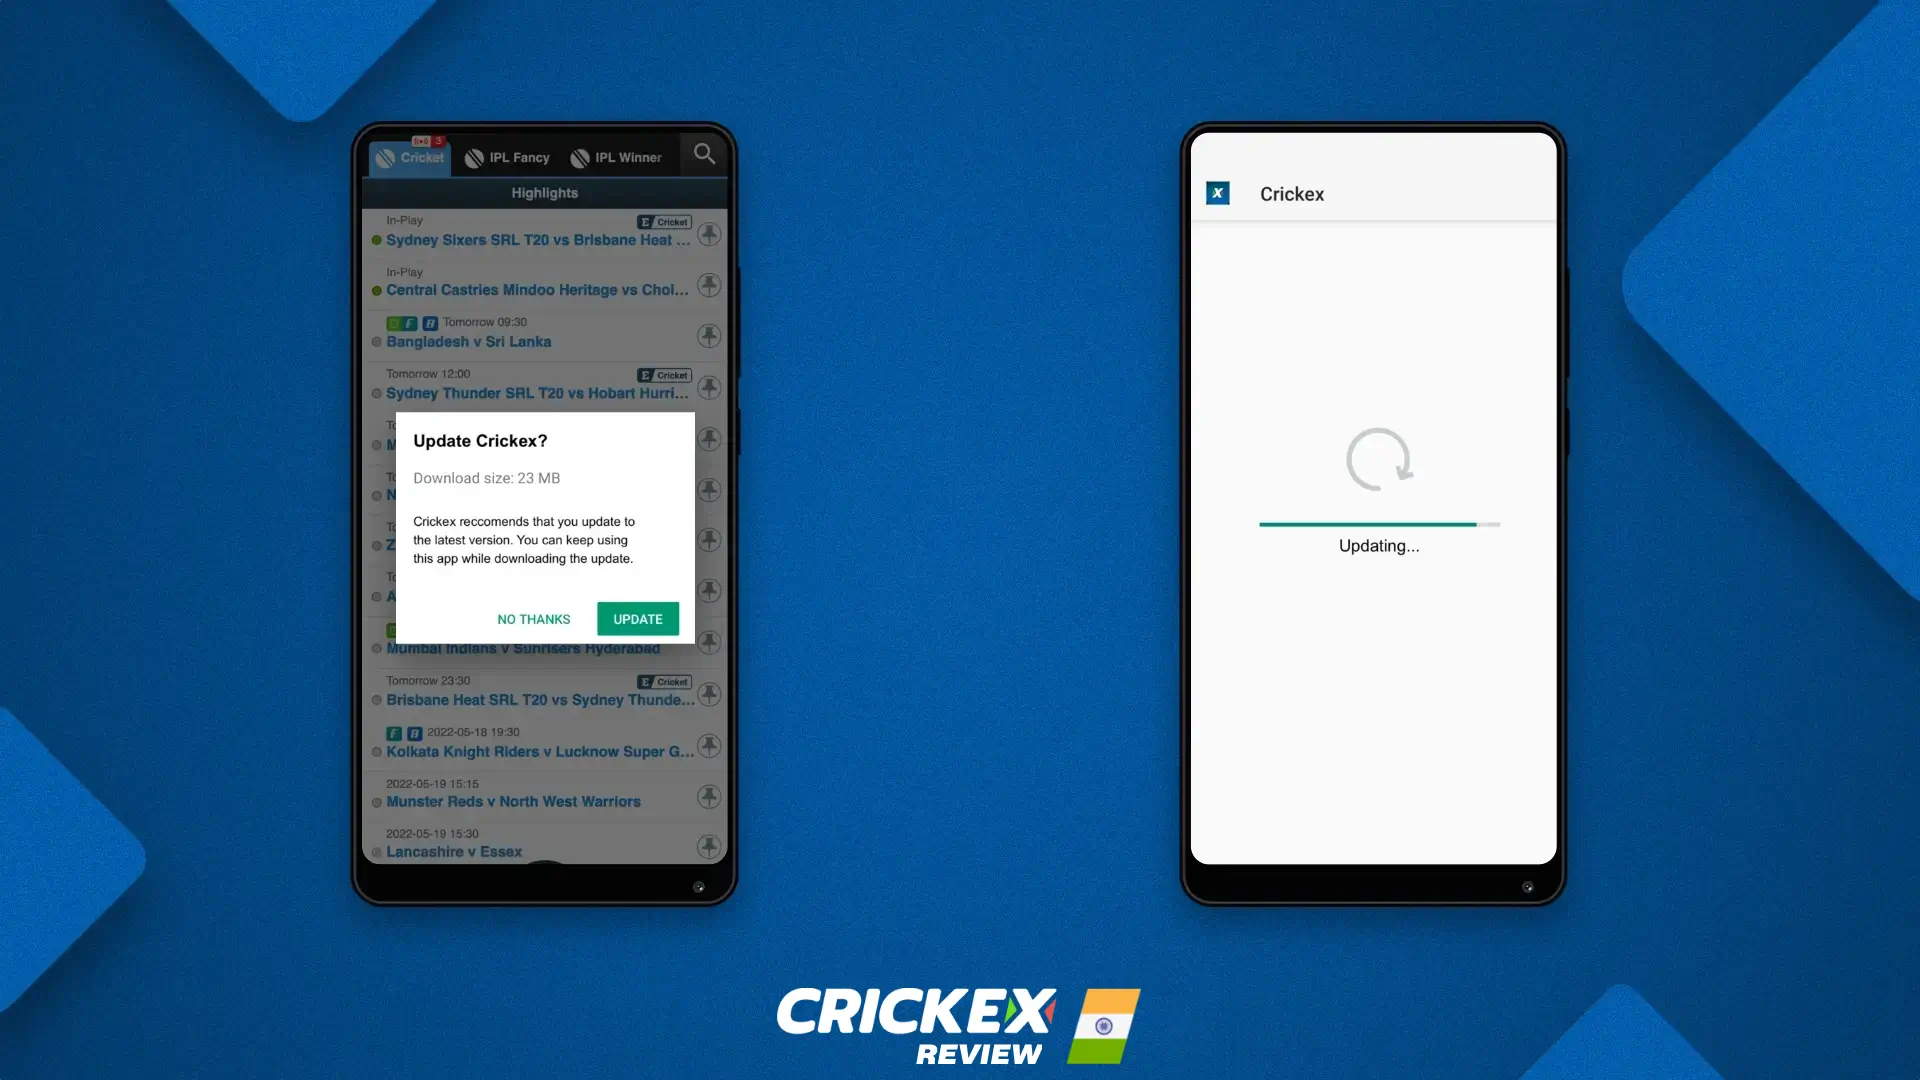 Crickex ऐप को नवीनतम संस्करण में कैसे अपडेट करें, इस बारे में विस्तृत जानकारी